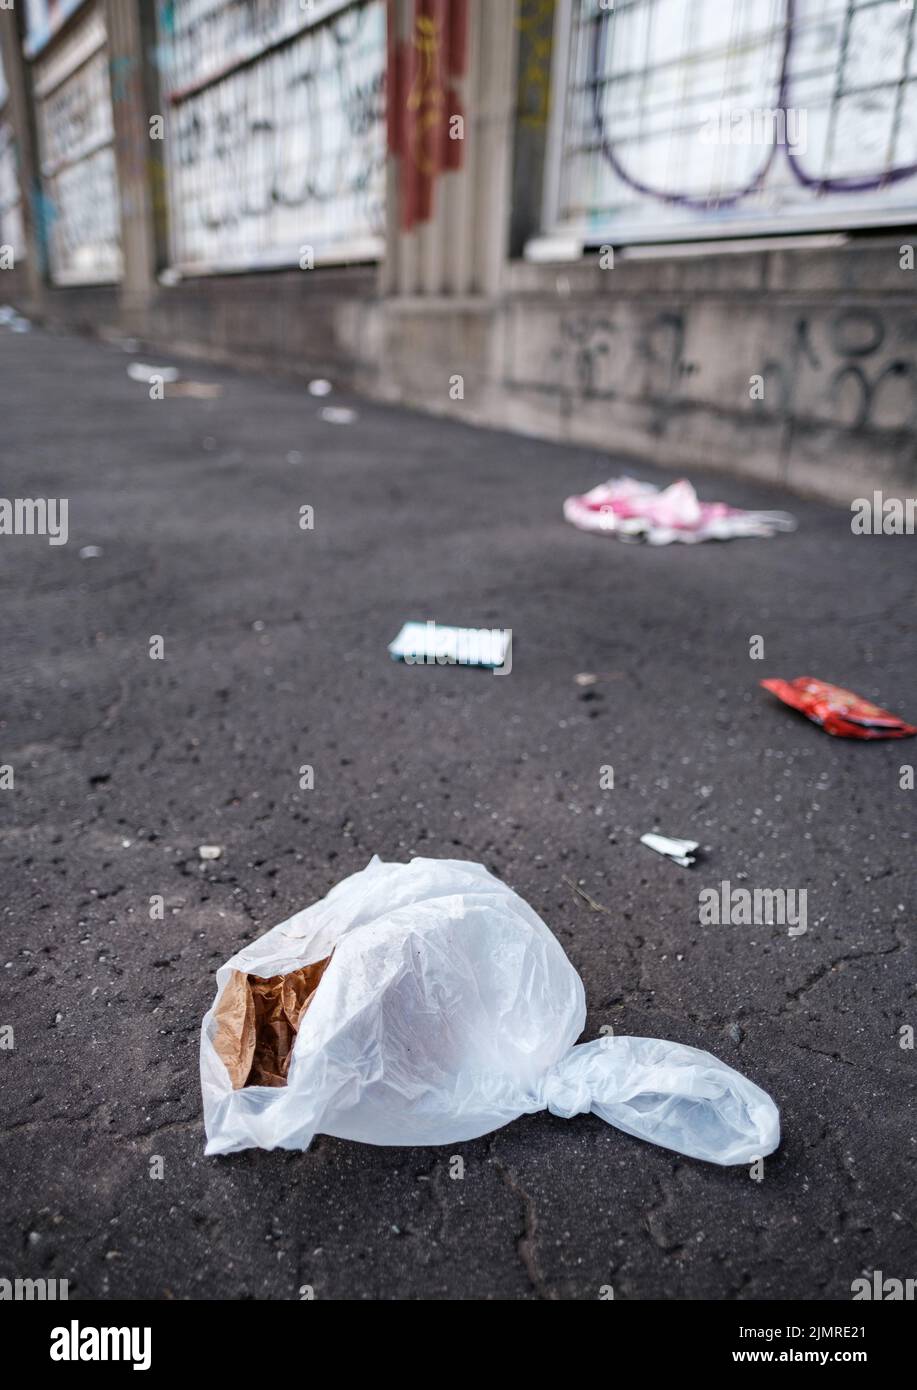 Basura (basura) desechada en Una calle de la ciudad Foto de stock